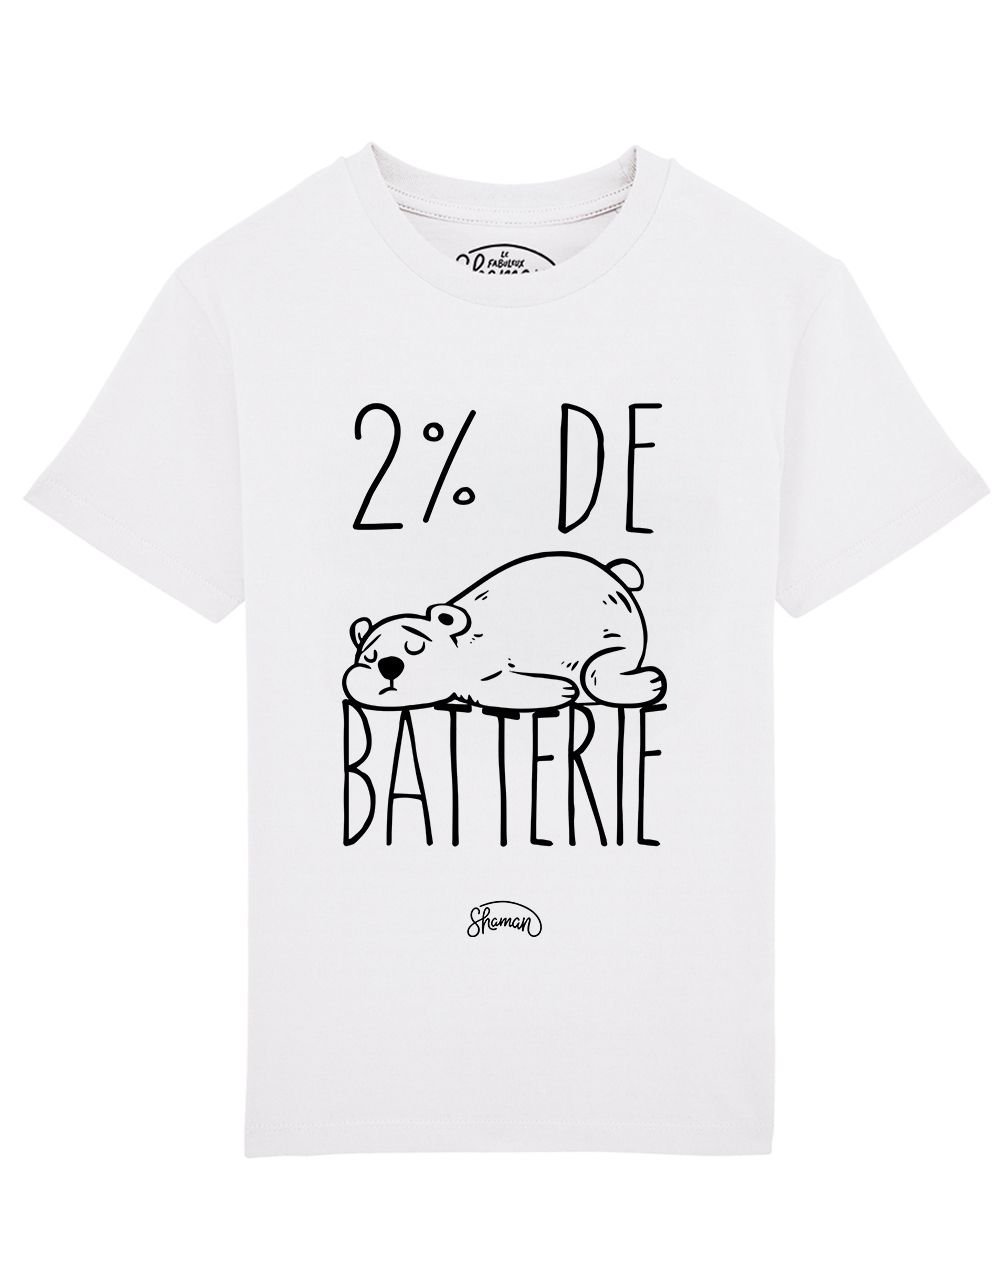 Tee shirt Batterie 2%